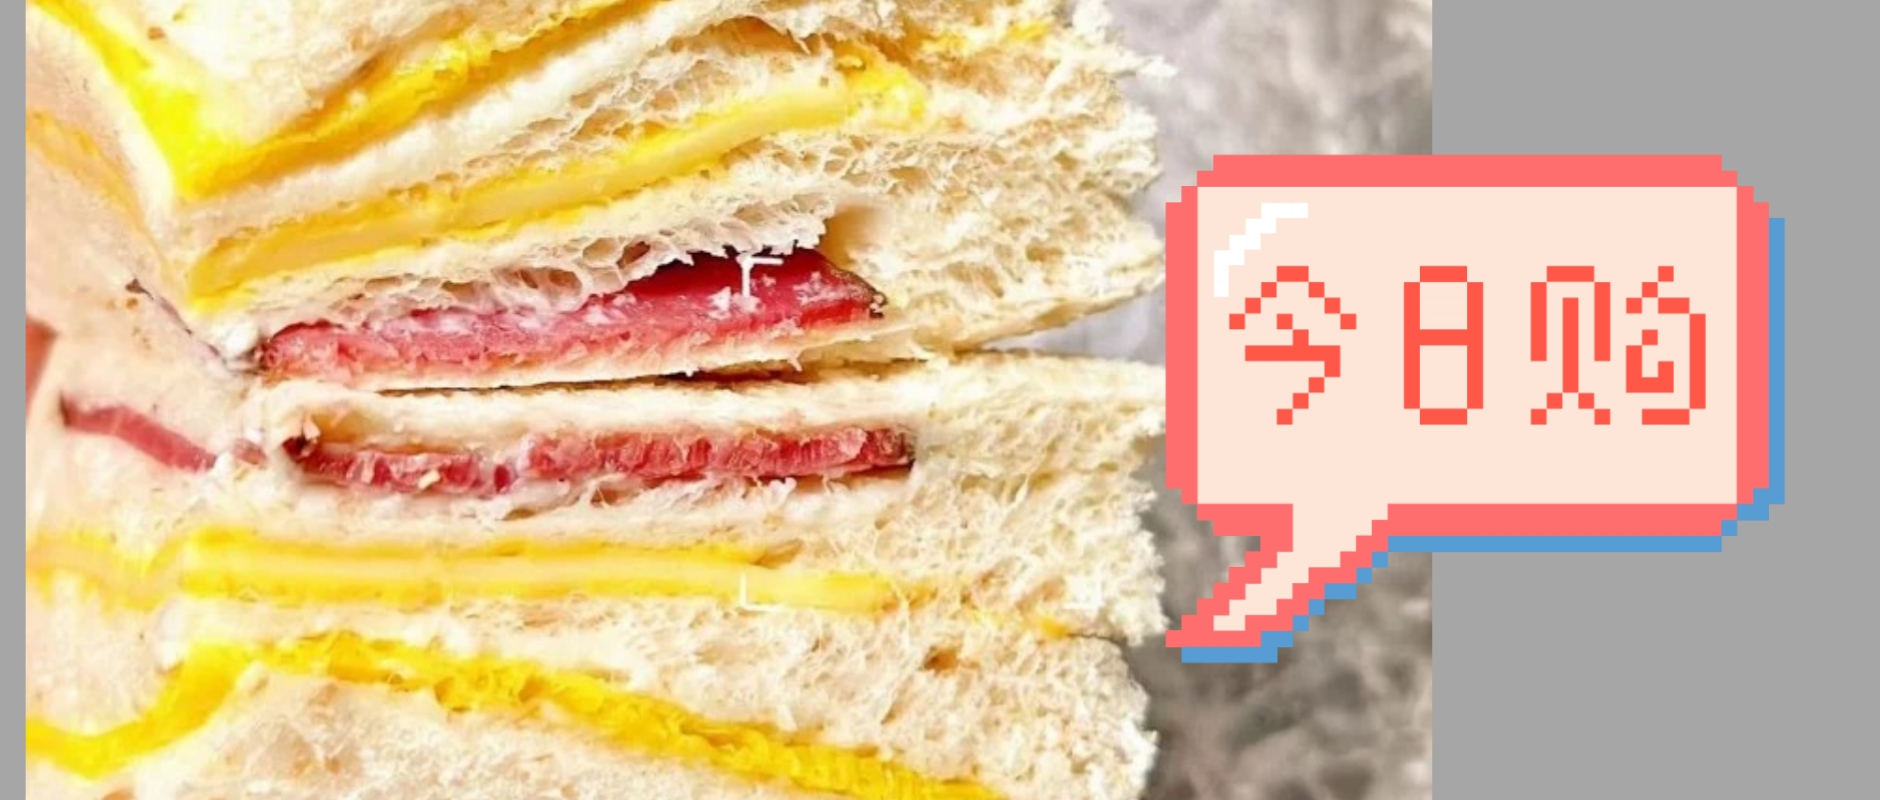 12.12超级团⚡全国包邮再送一枚❗️满滋屋日式三明治